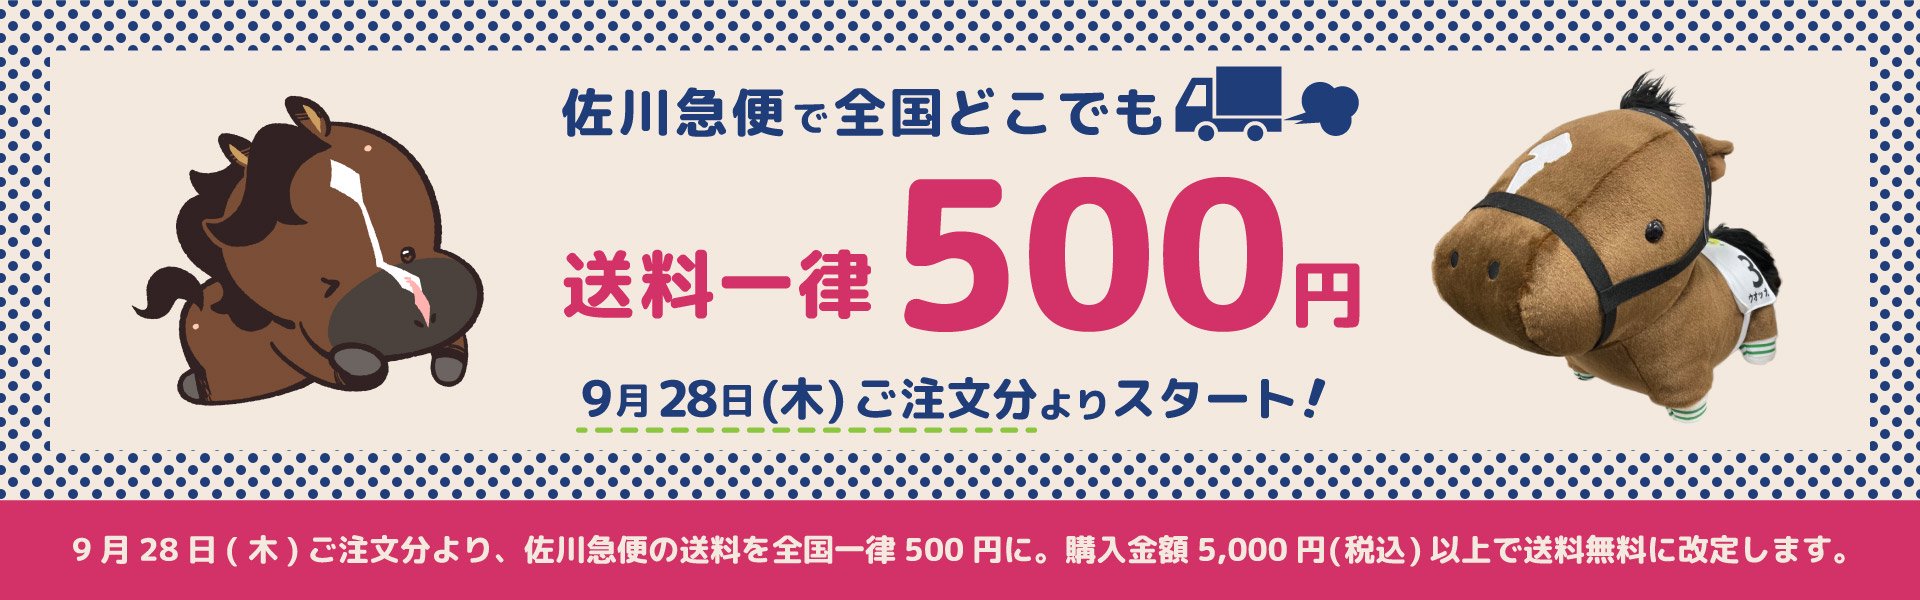 9/28より送料が全国一律500円になります。